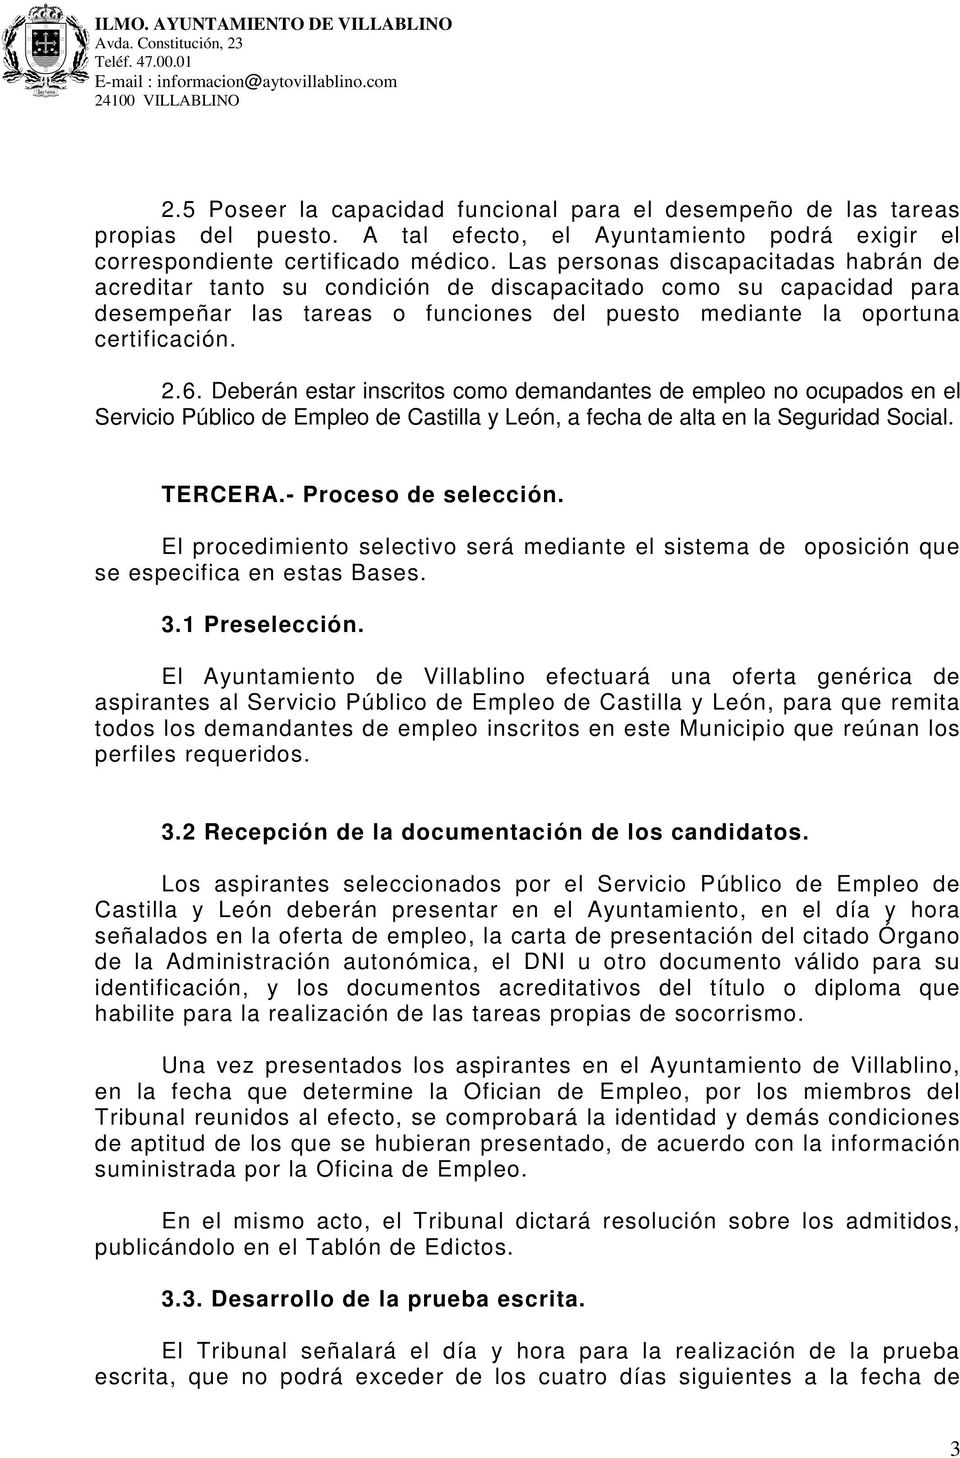 Deberán estar inscritos como demandantes de empleo no ocupados en el Servicio Público de Empleo de Castilla y León, a fecha de alta en la Seguridad Social. TERCERA.- Proceso de selección.